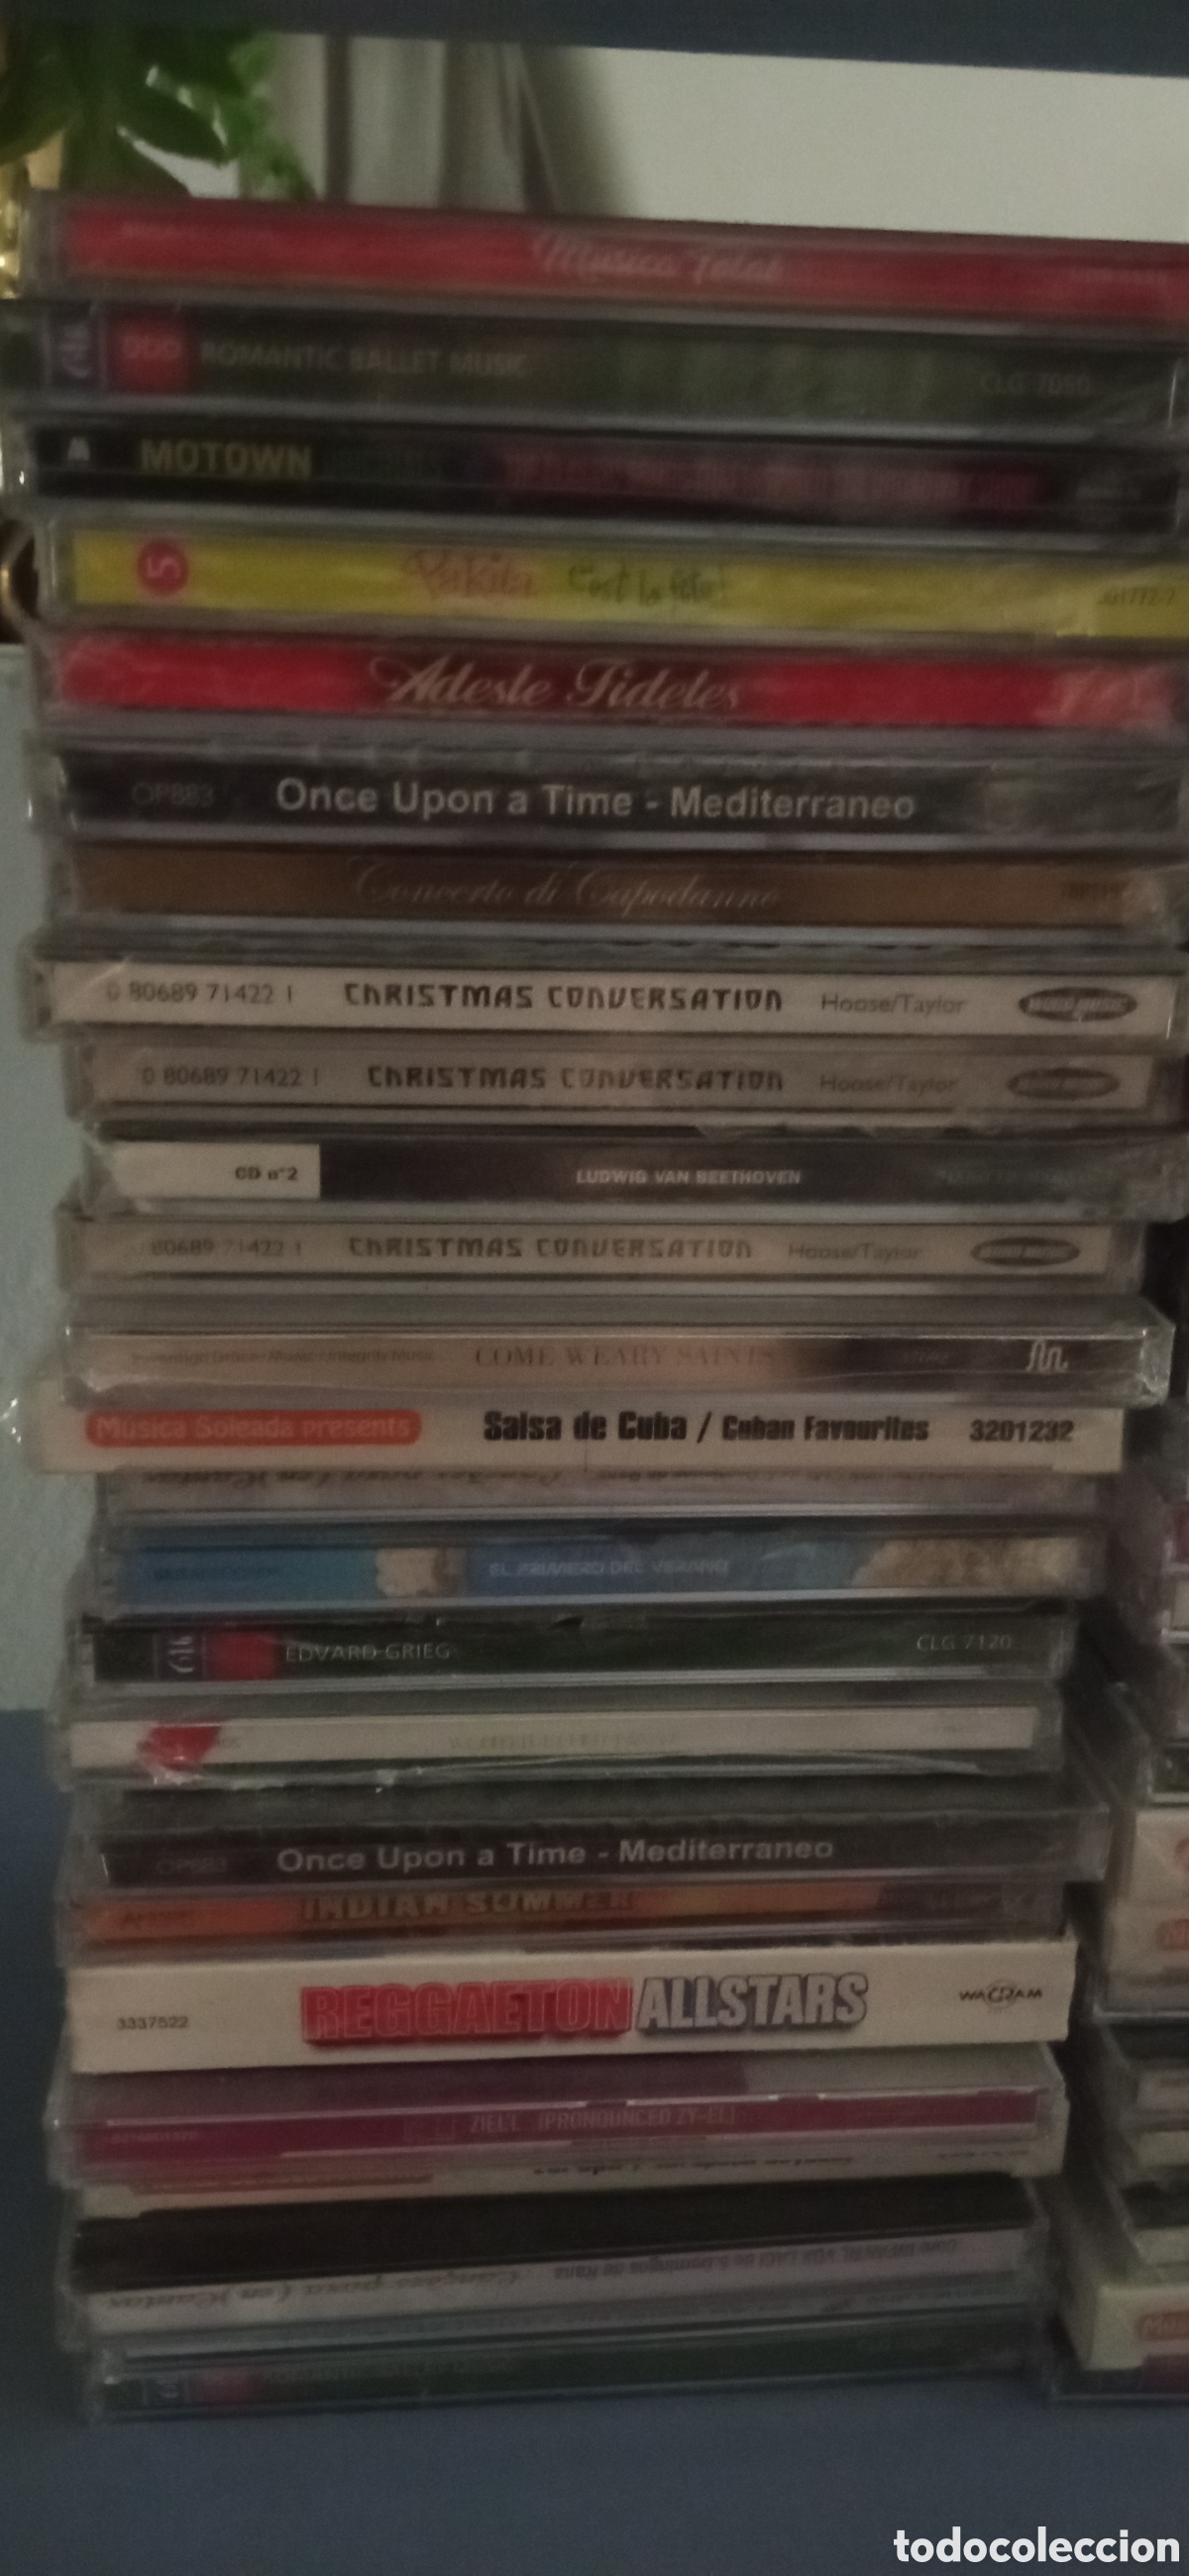 lote de 50 discos de música variada - cd's - cd - Comprar CD de música de  outros estilos no todocoleccion